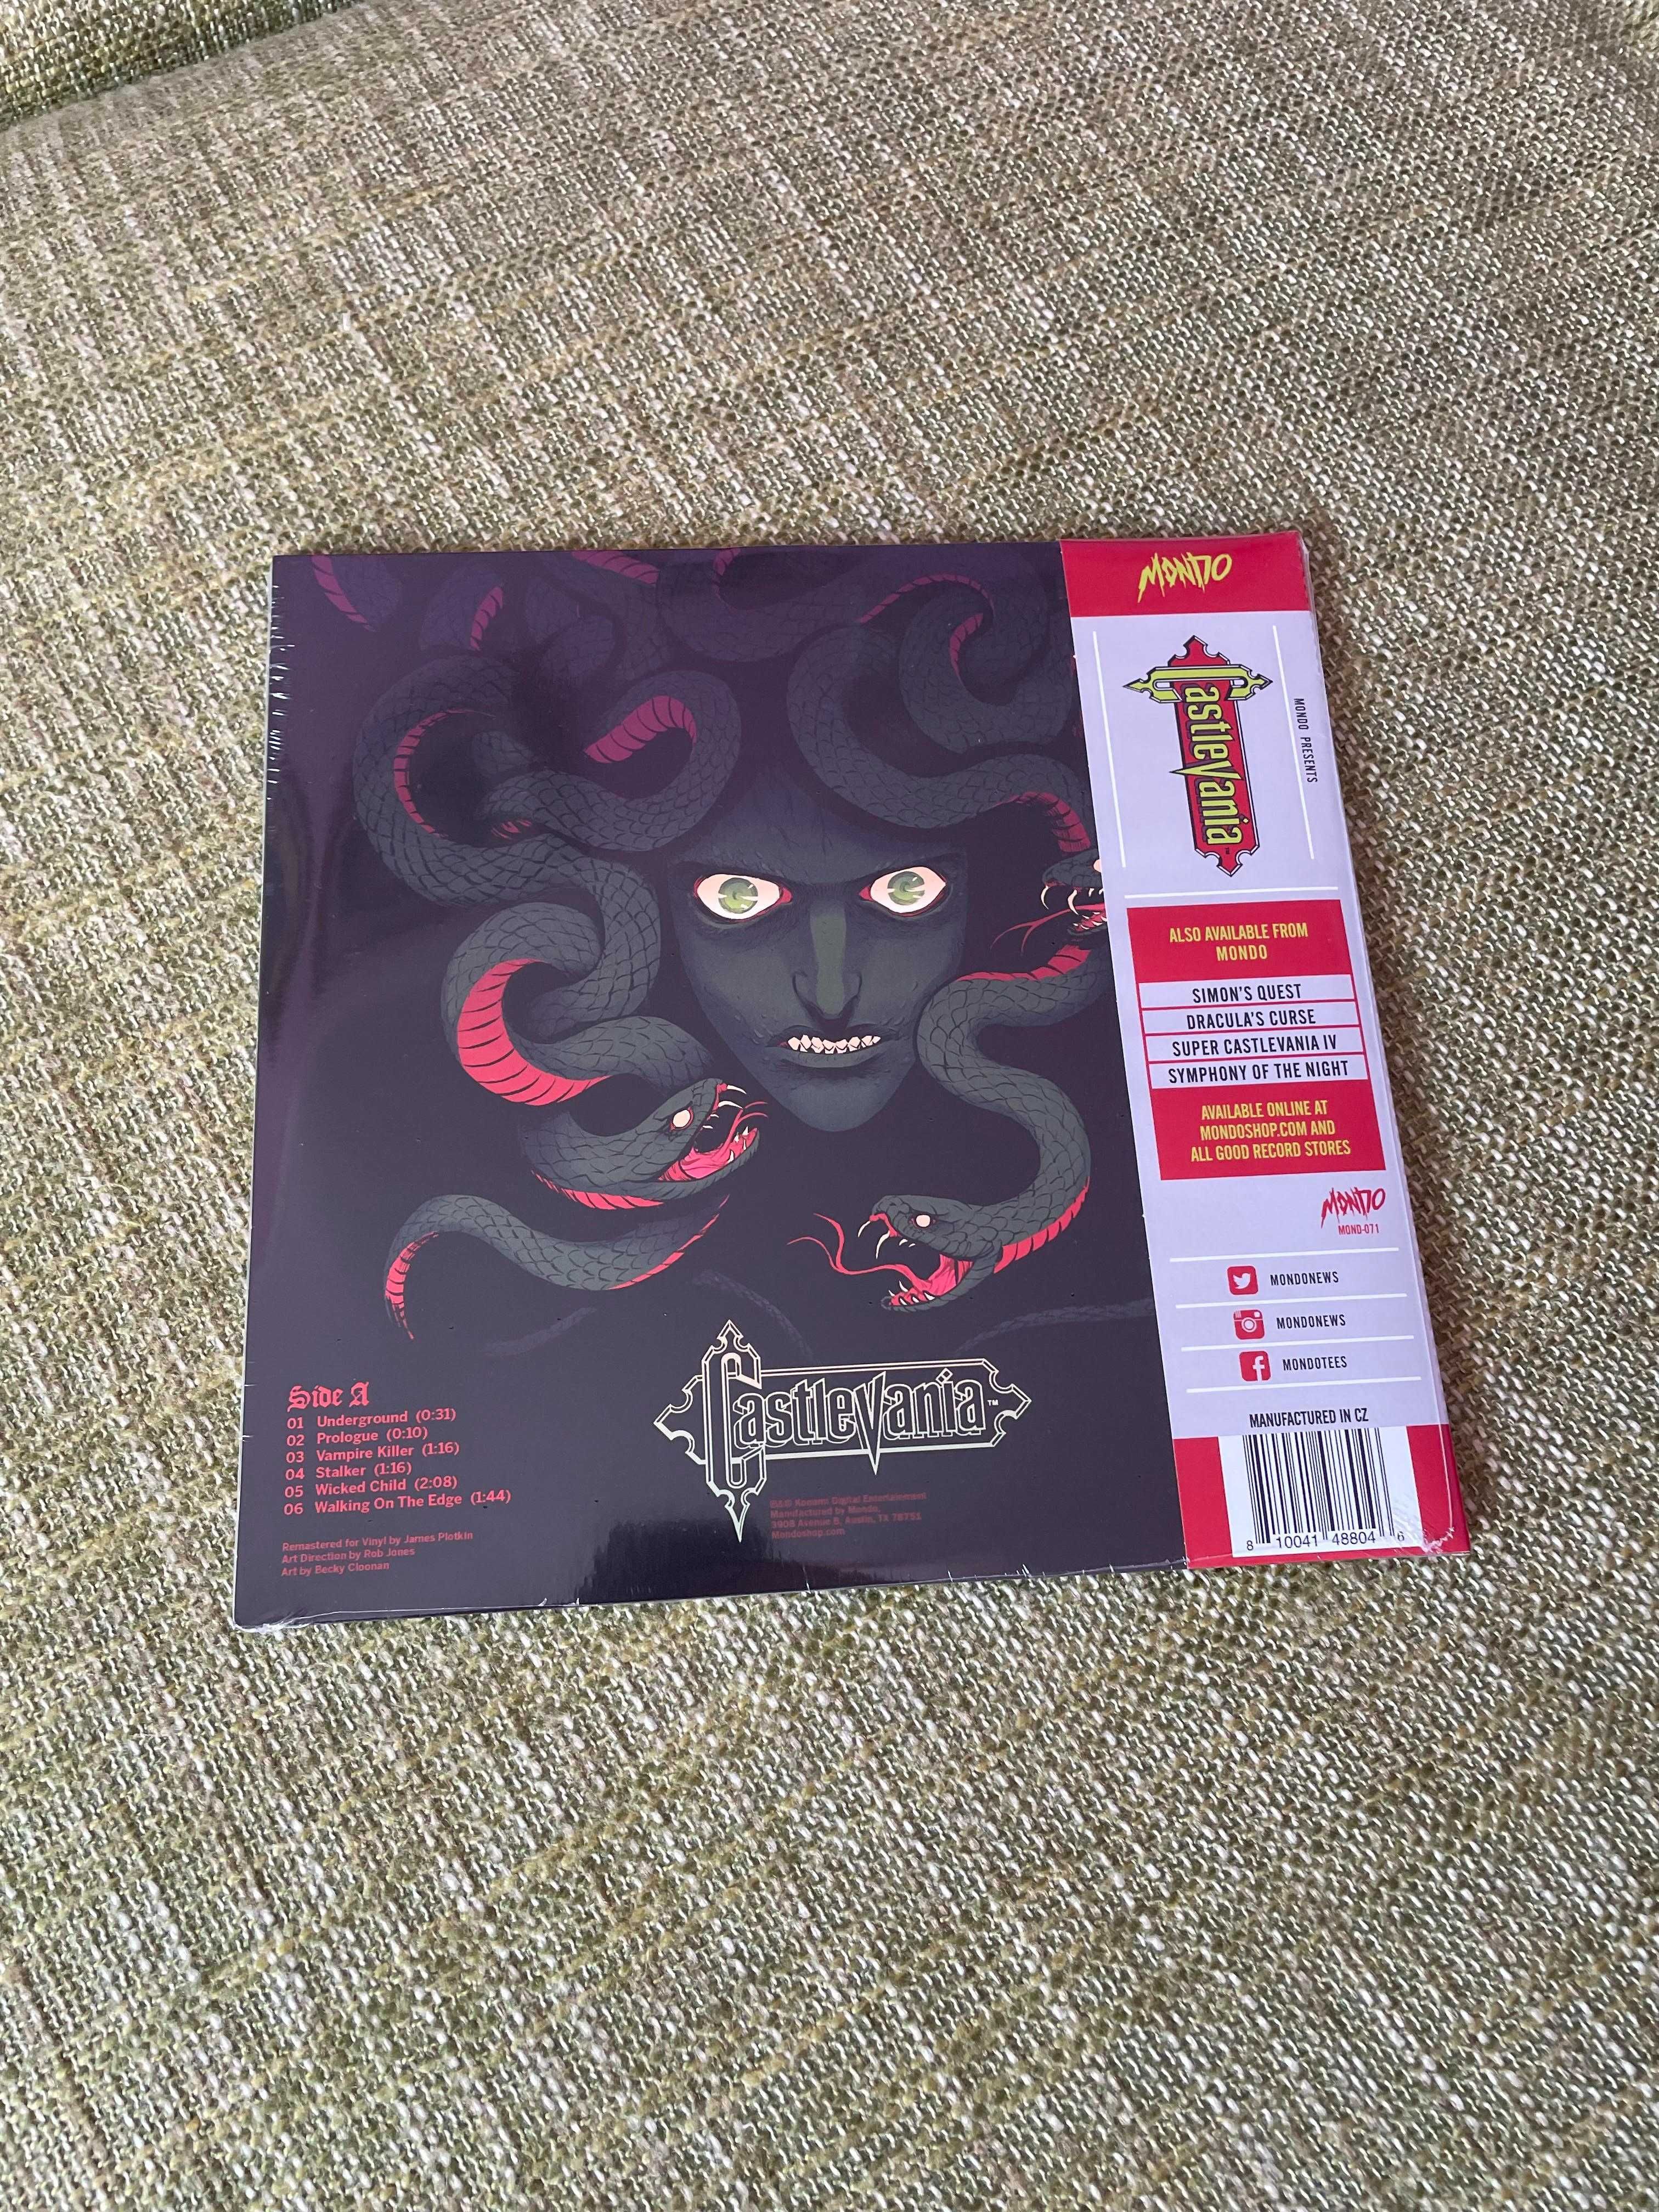 Castlevania – Original Video Game Soundtrack 10" LP